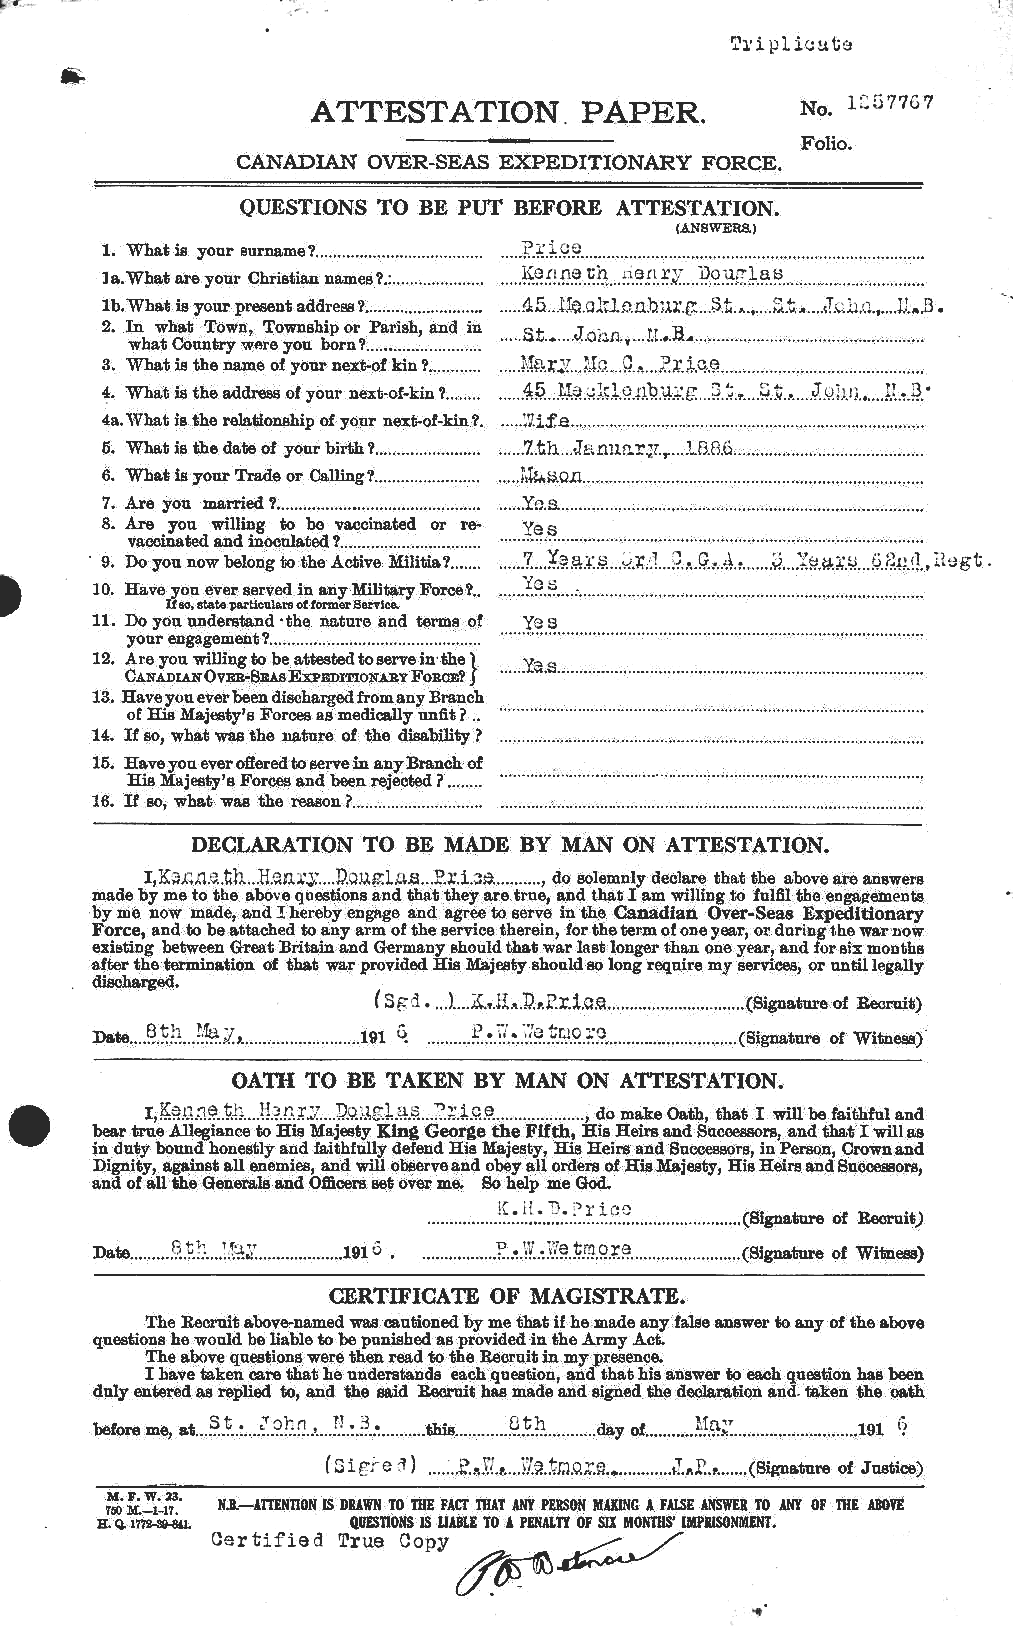 Dossiers du Personnel de la Première Guerre mondiale - CEC 587271a